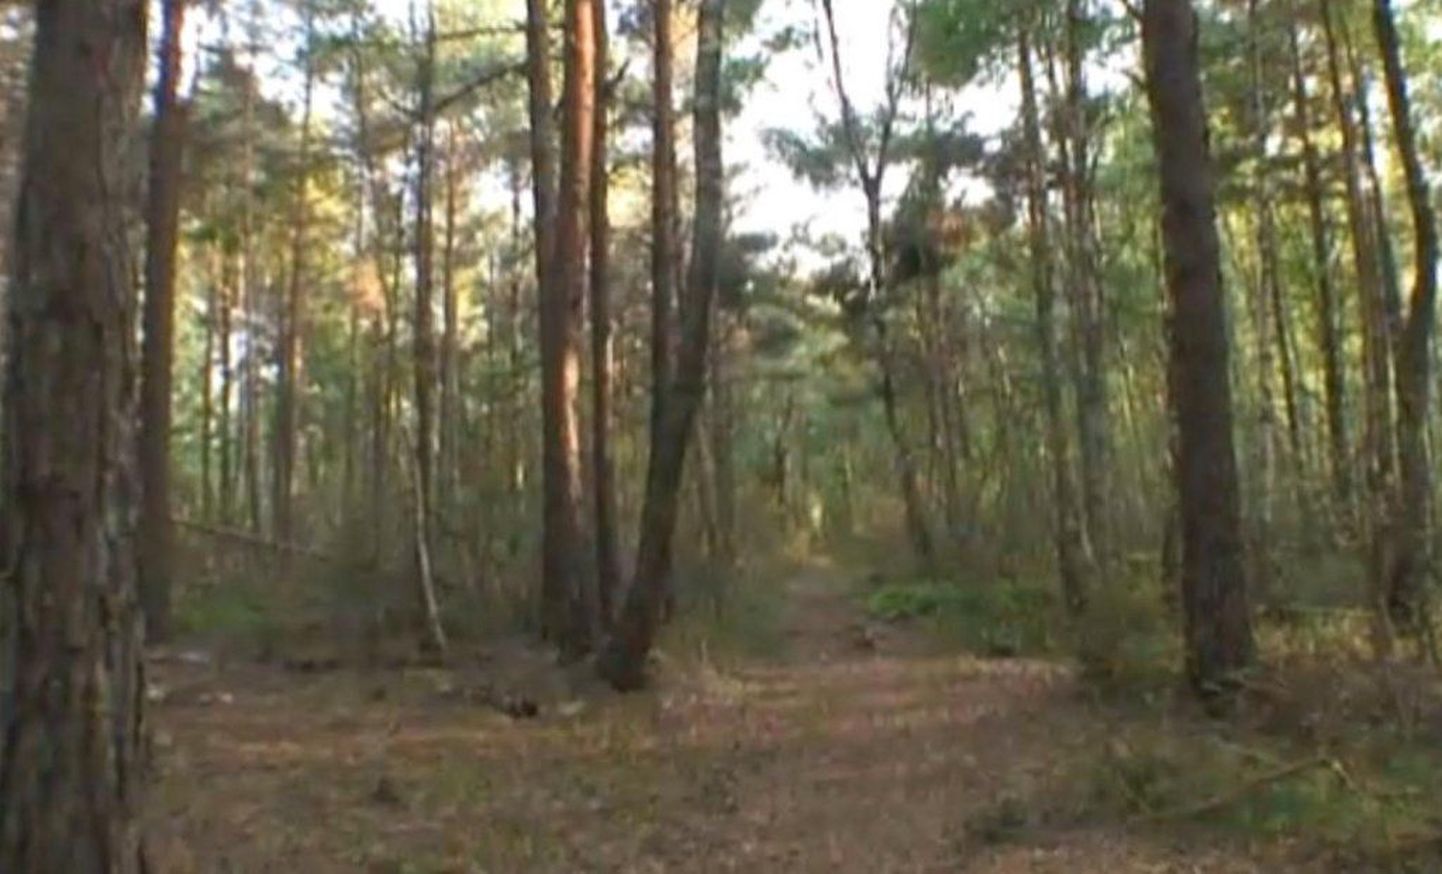 Matkajad leidsid Koonga vallast metsatee äärest peata põdrakorjuse.